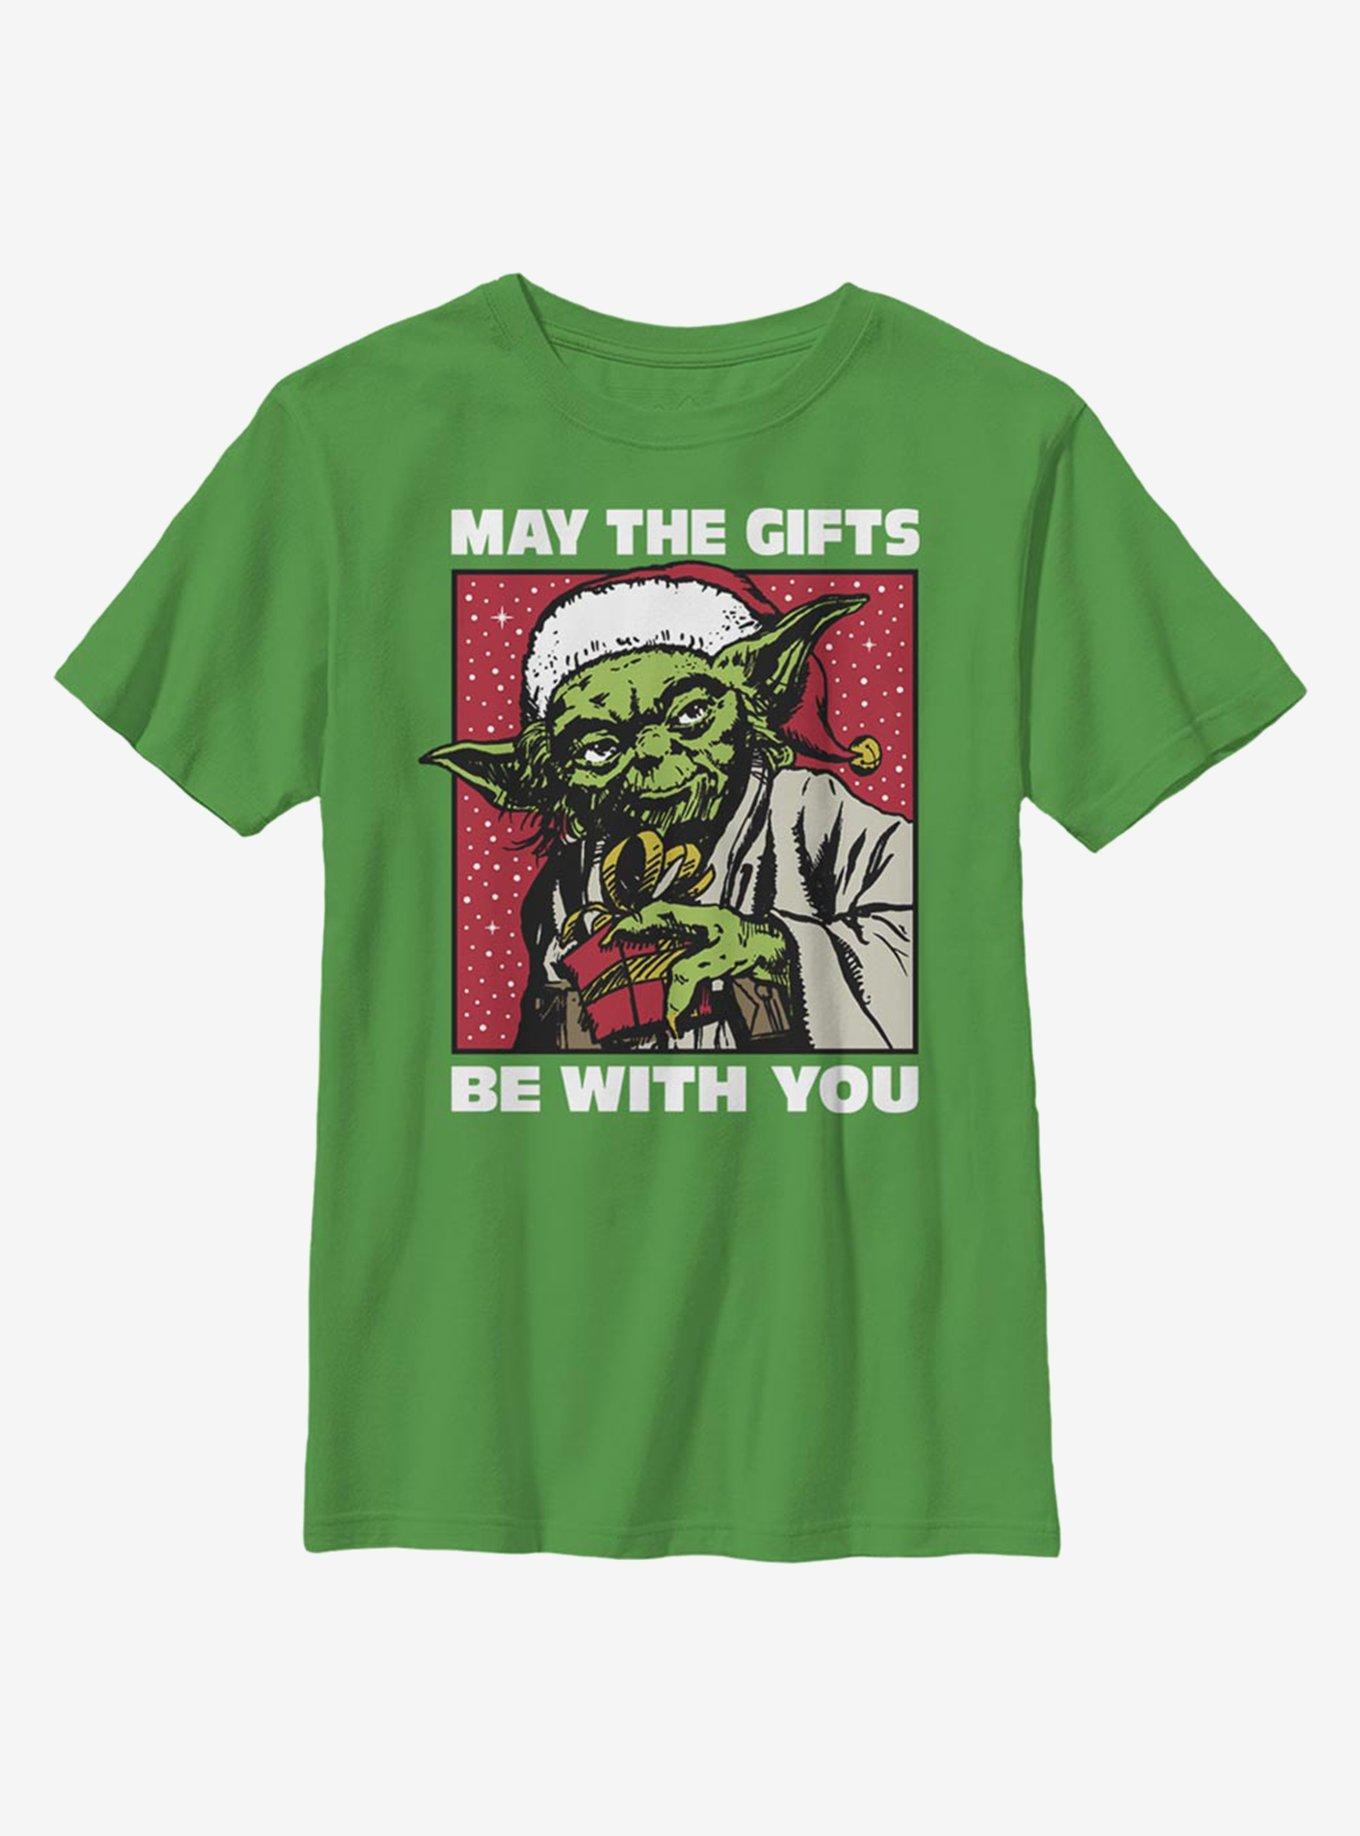 Star Wars Yoda Gifts Youth T-Shirt, KELLY, hi-res